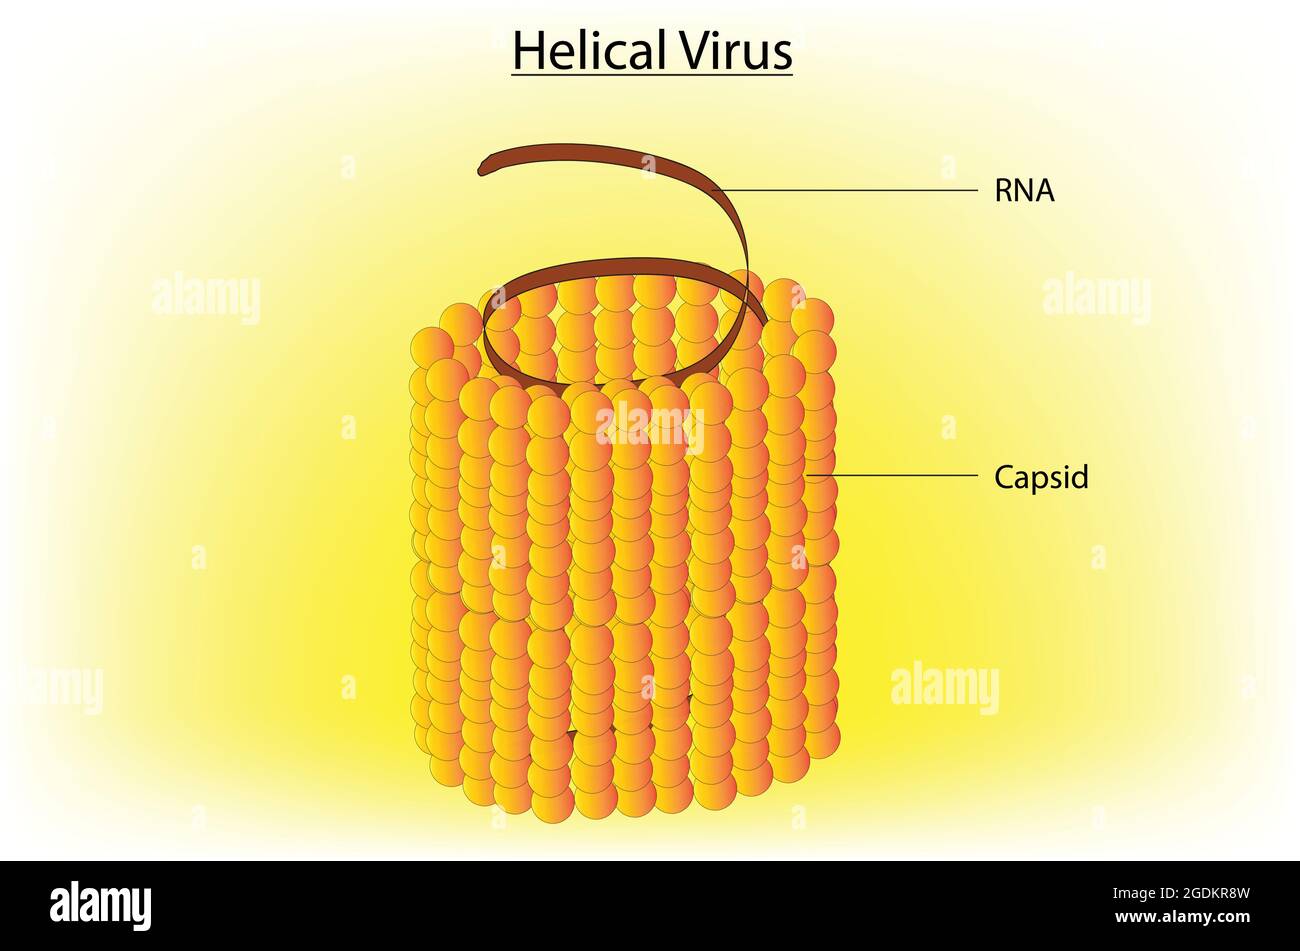 Anatomie biologique du virus hélicoïdal, structure marquée du virus hélicoïdal, illustration détaillée du virus hélicoïdal, virus ARN, anatomie du virus arn Illustration de Vecteur